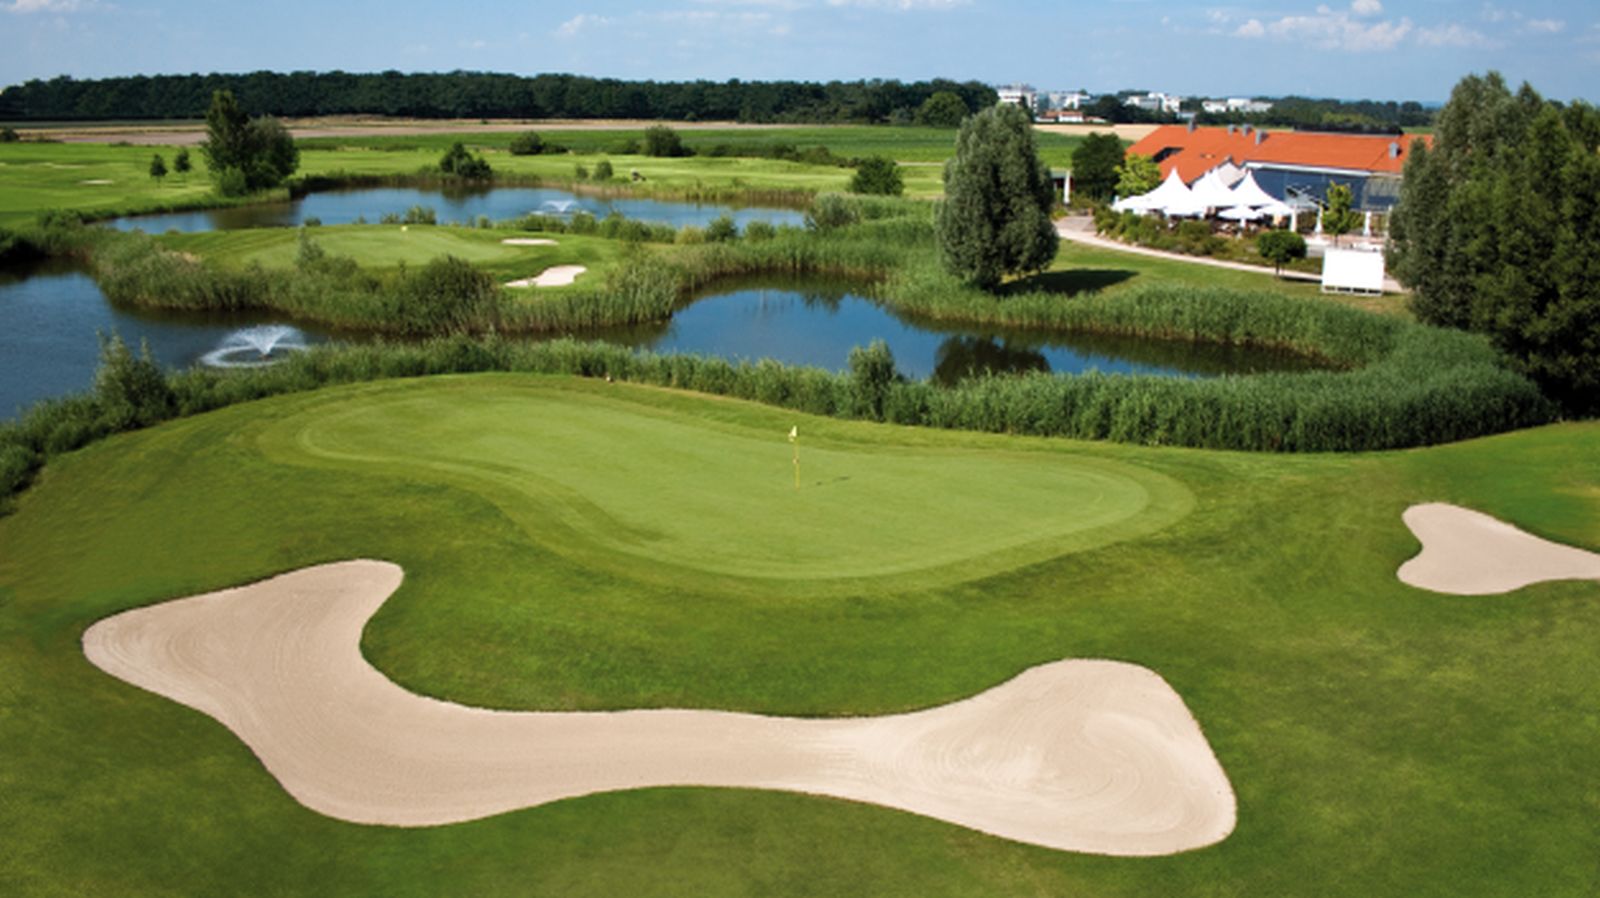 Der Golfpark Kurpfalz ist Austragungsort des Networking-Golfturniers Meet&Greet am 12. November.